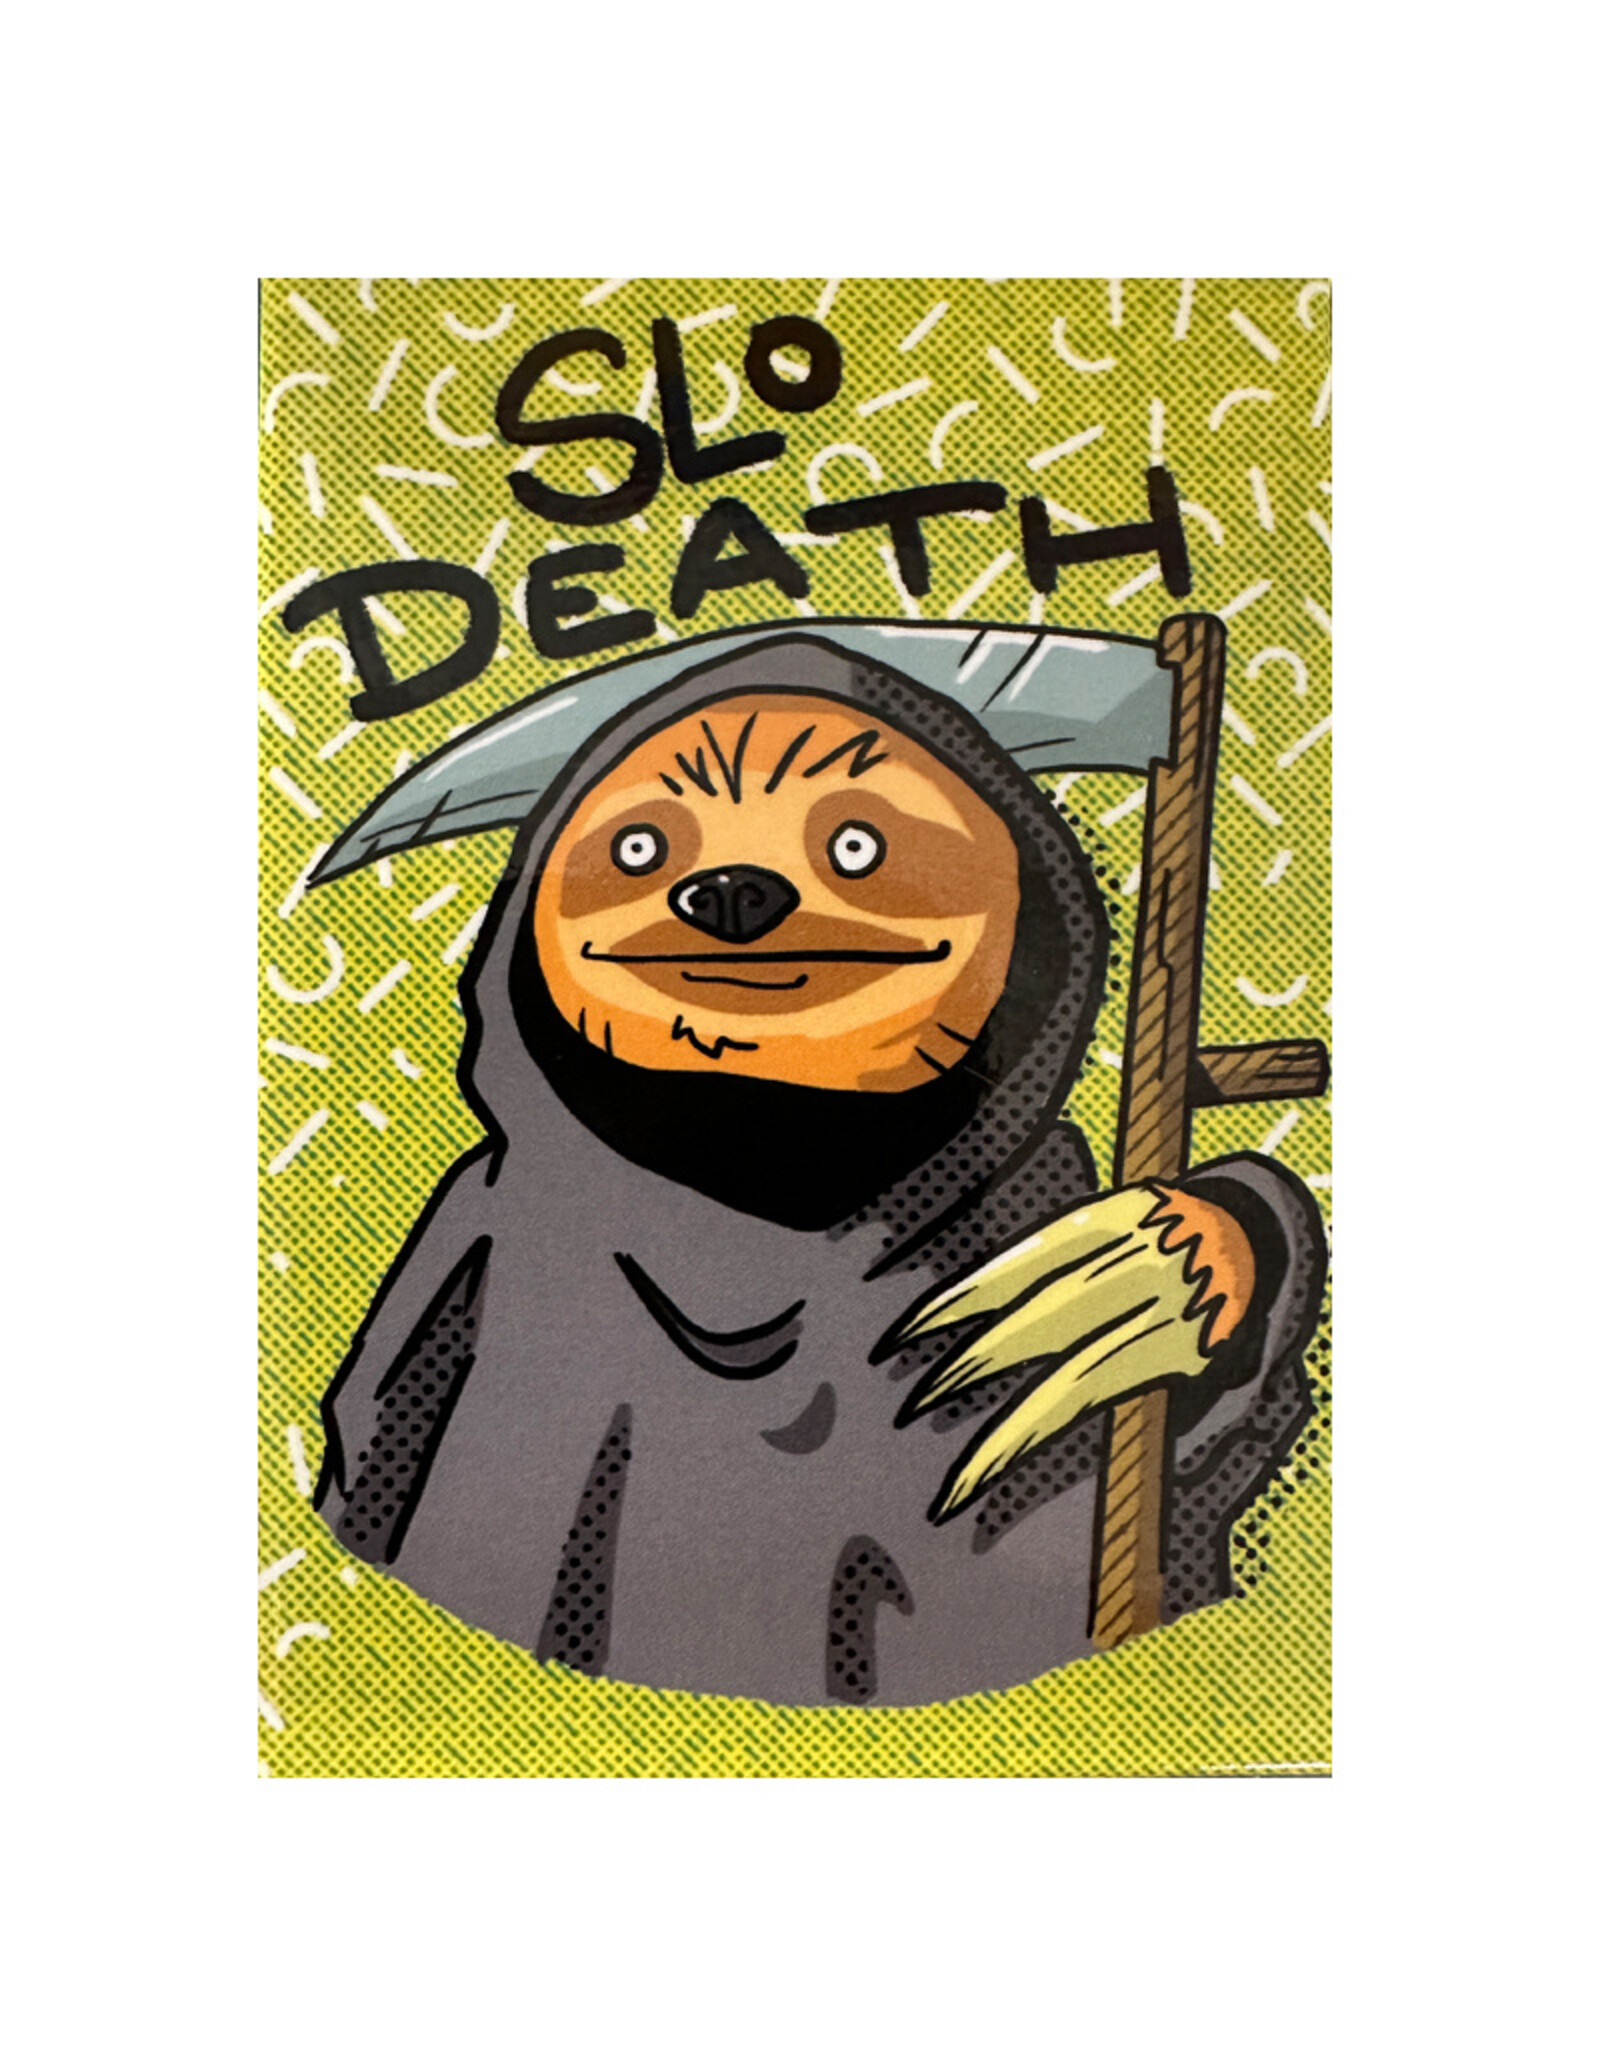 Ata-Boy Death Sloth Magnet